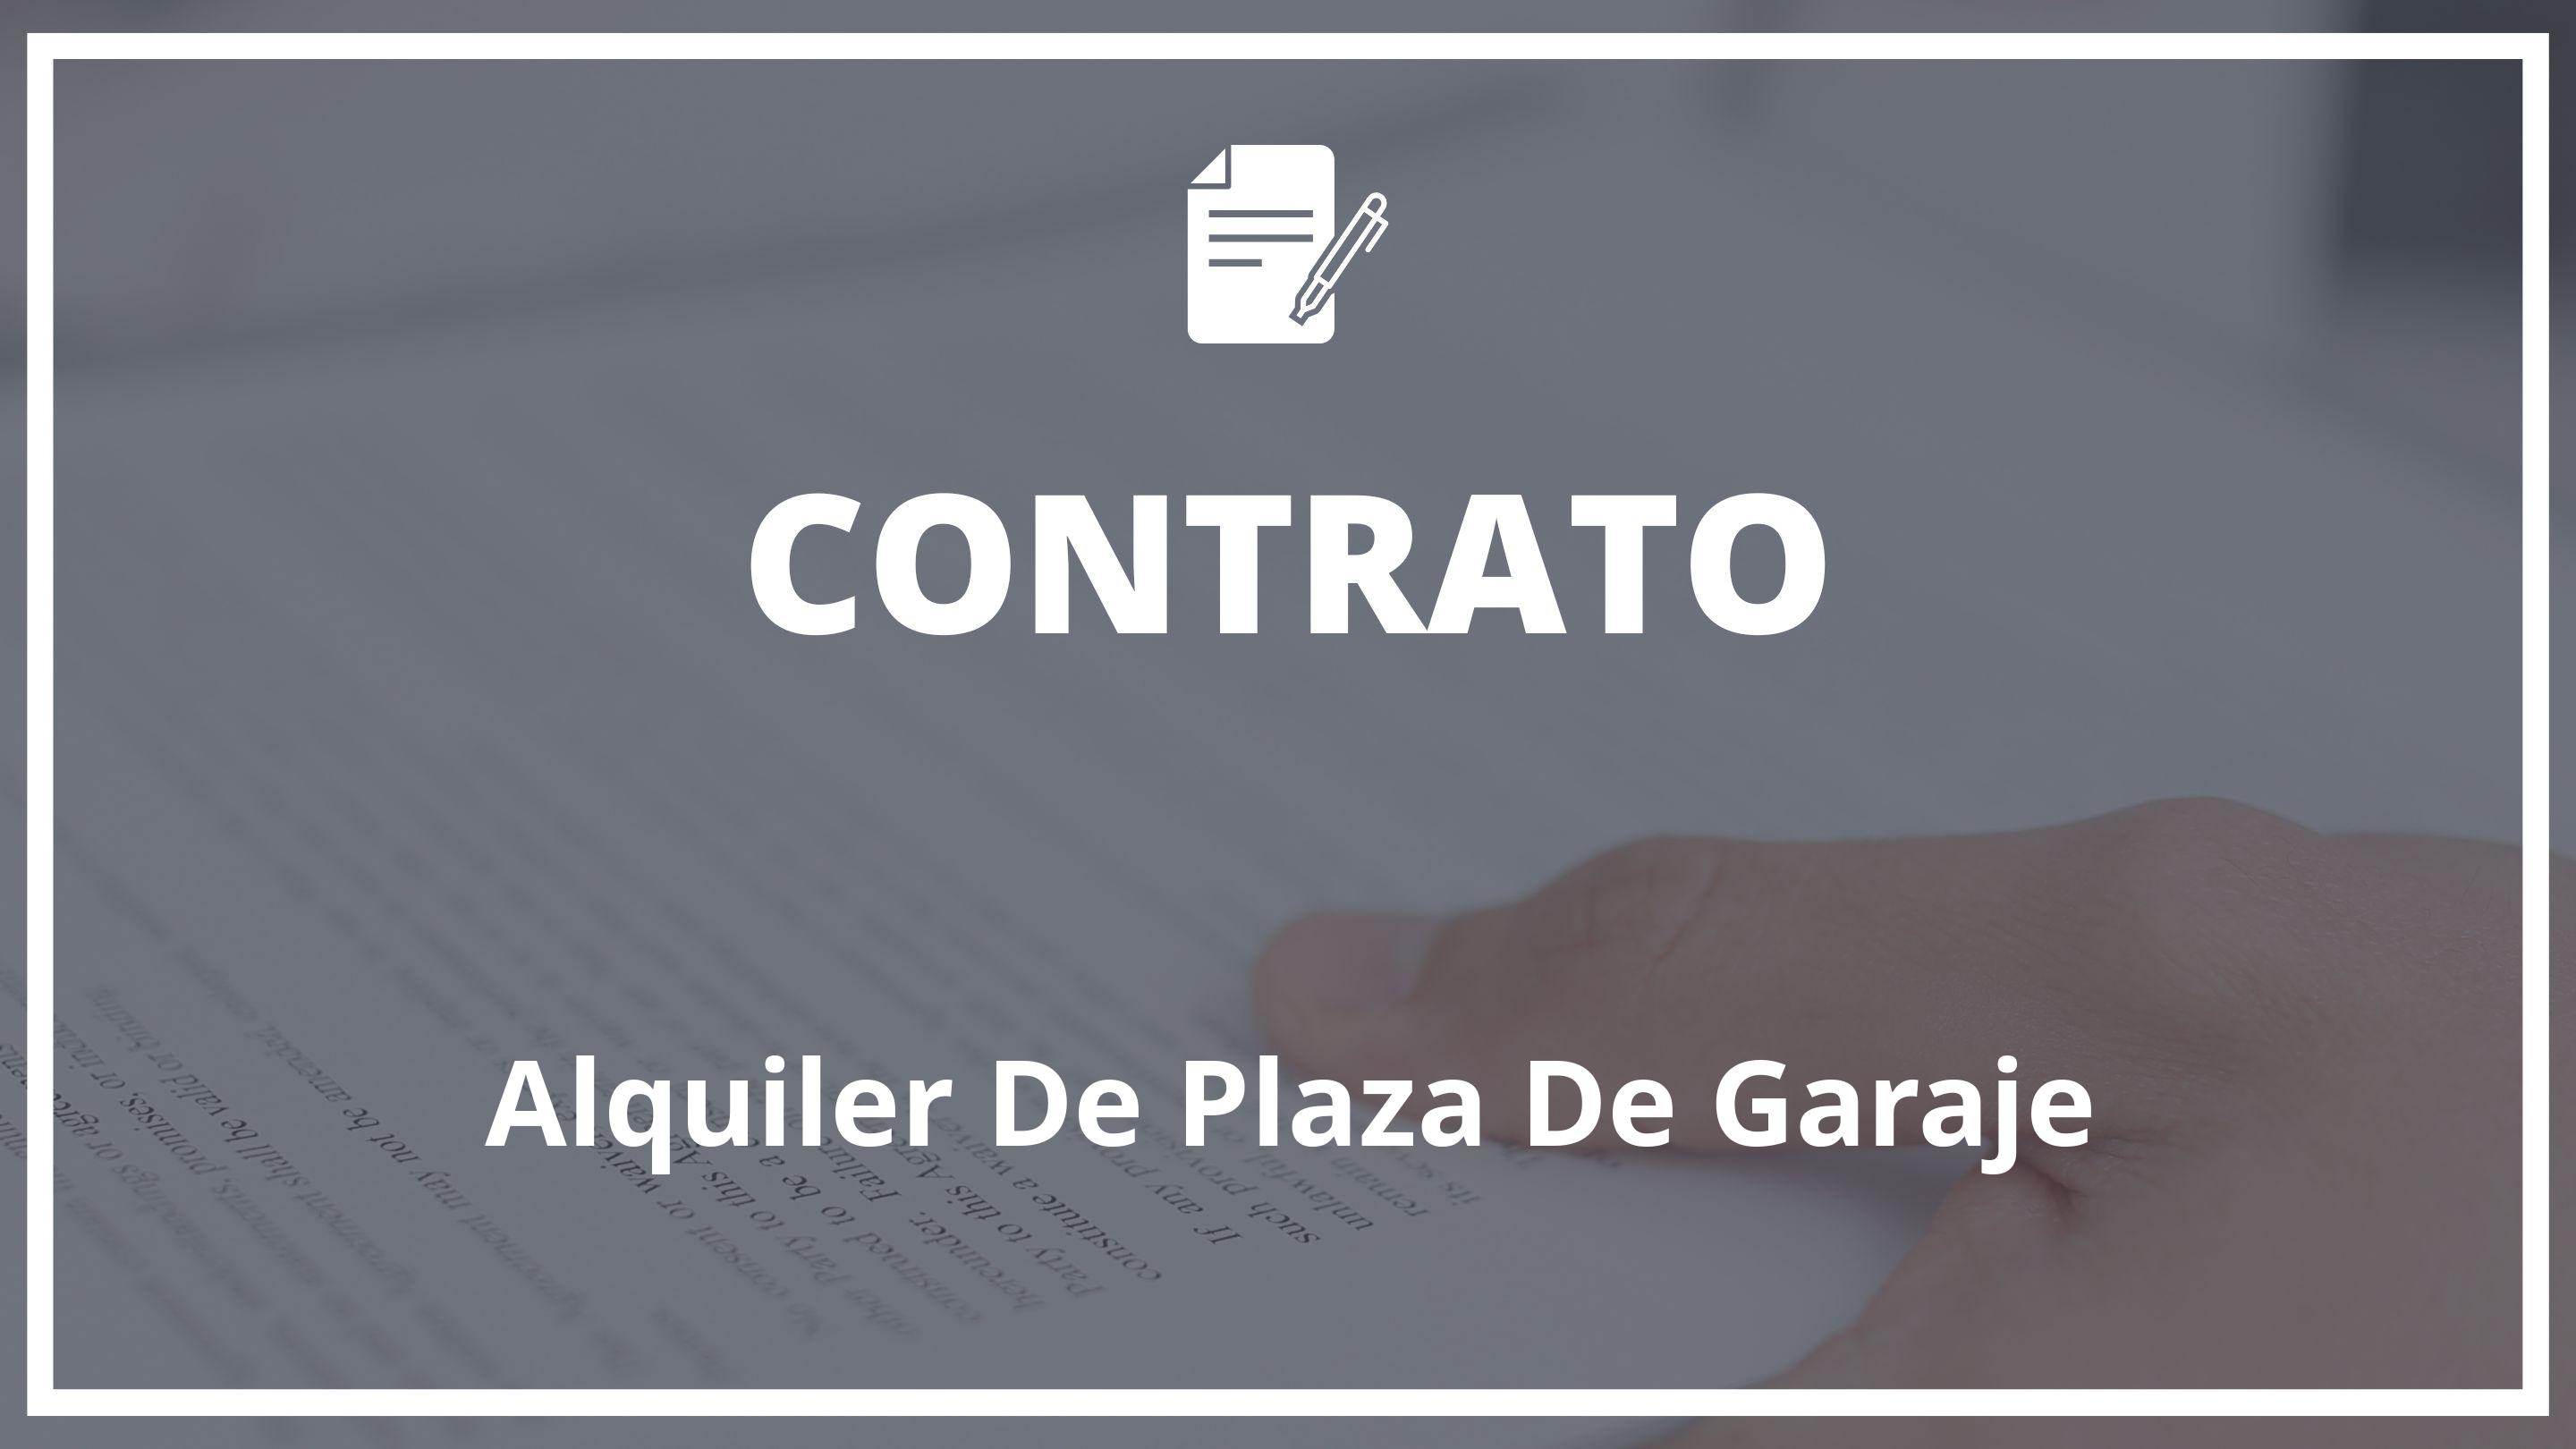 Modelo Contrato De Alquiler De Plaza De Garaje Plantilla Word 0127